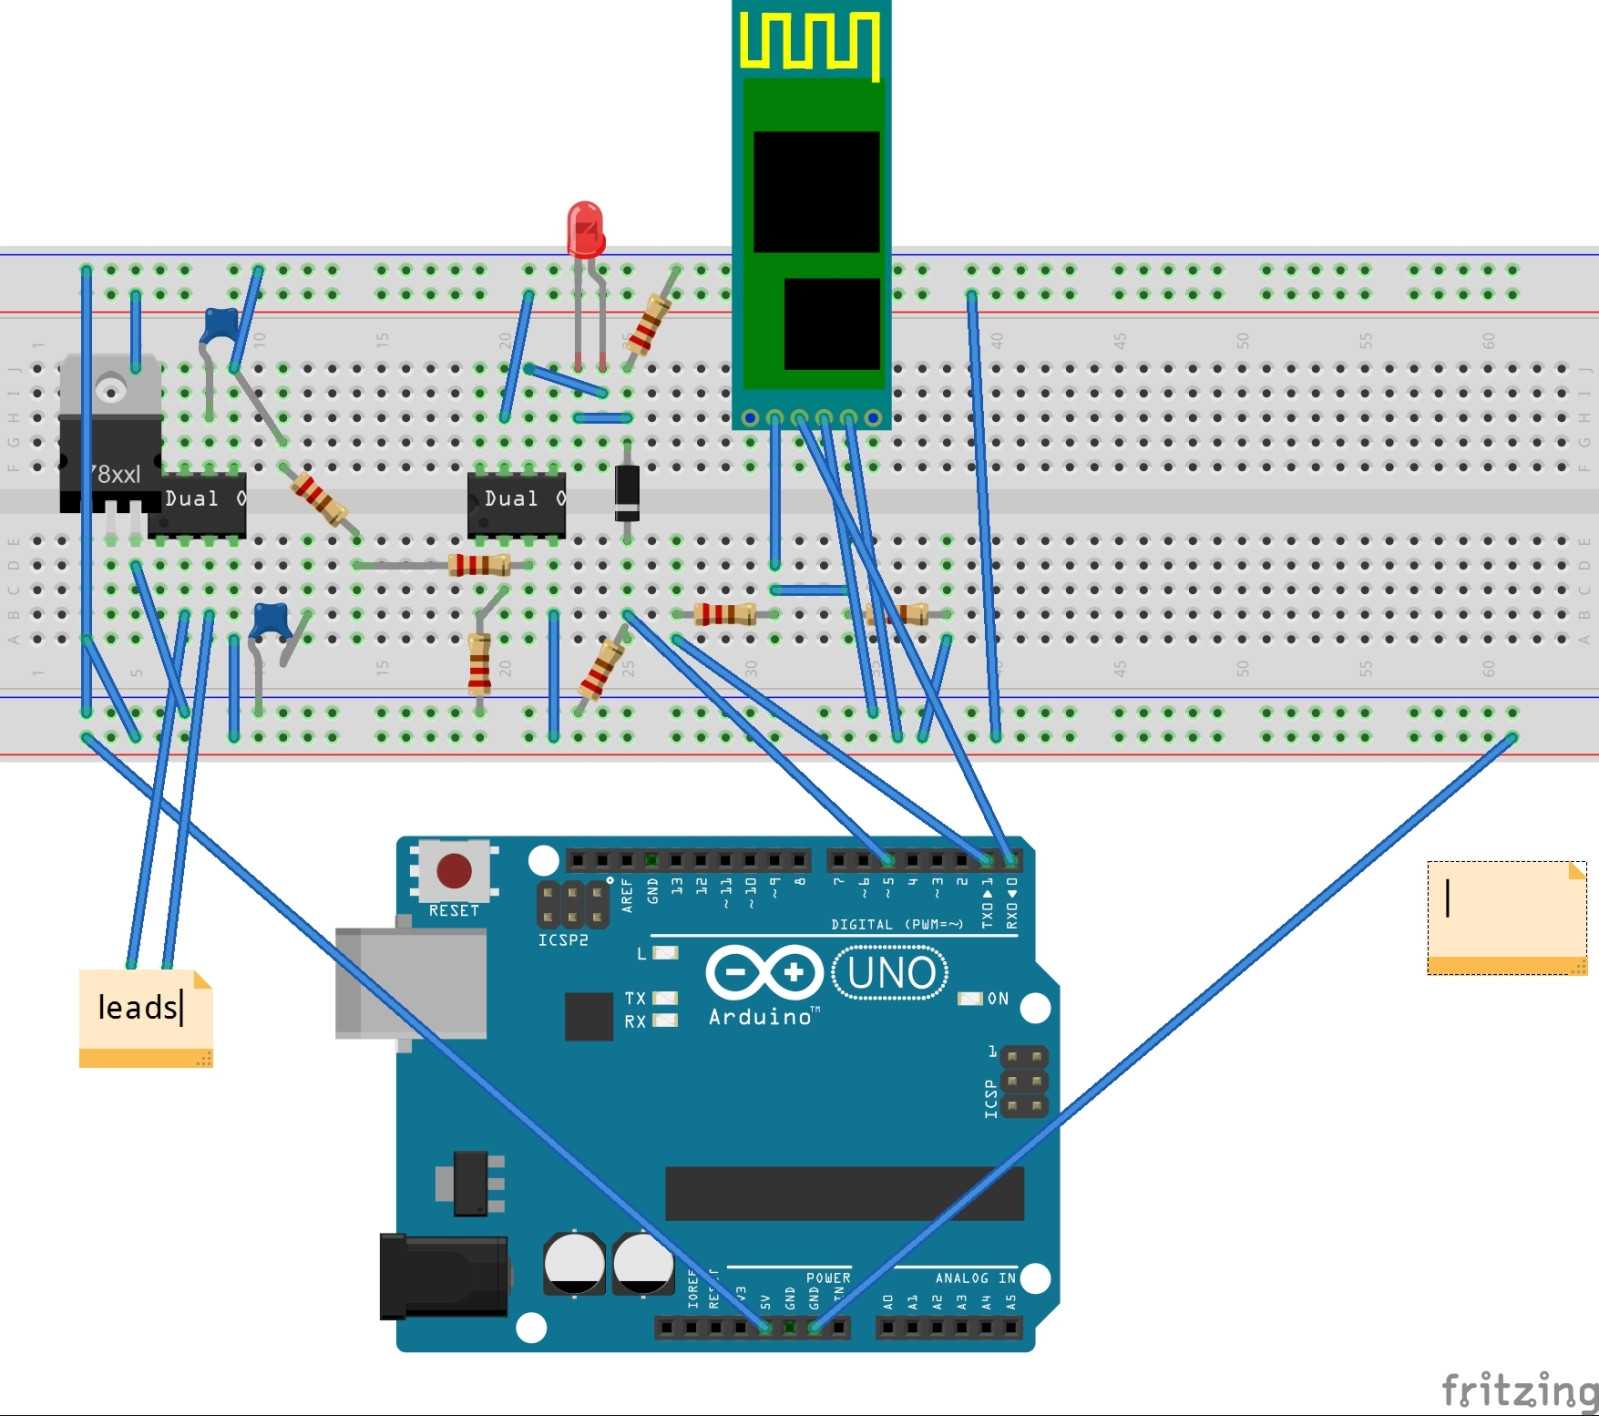 Умный дом на базе контроллеров arduino: проектирование и организация управляемого пространства